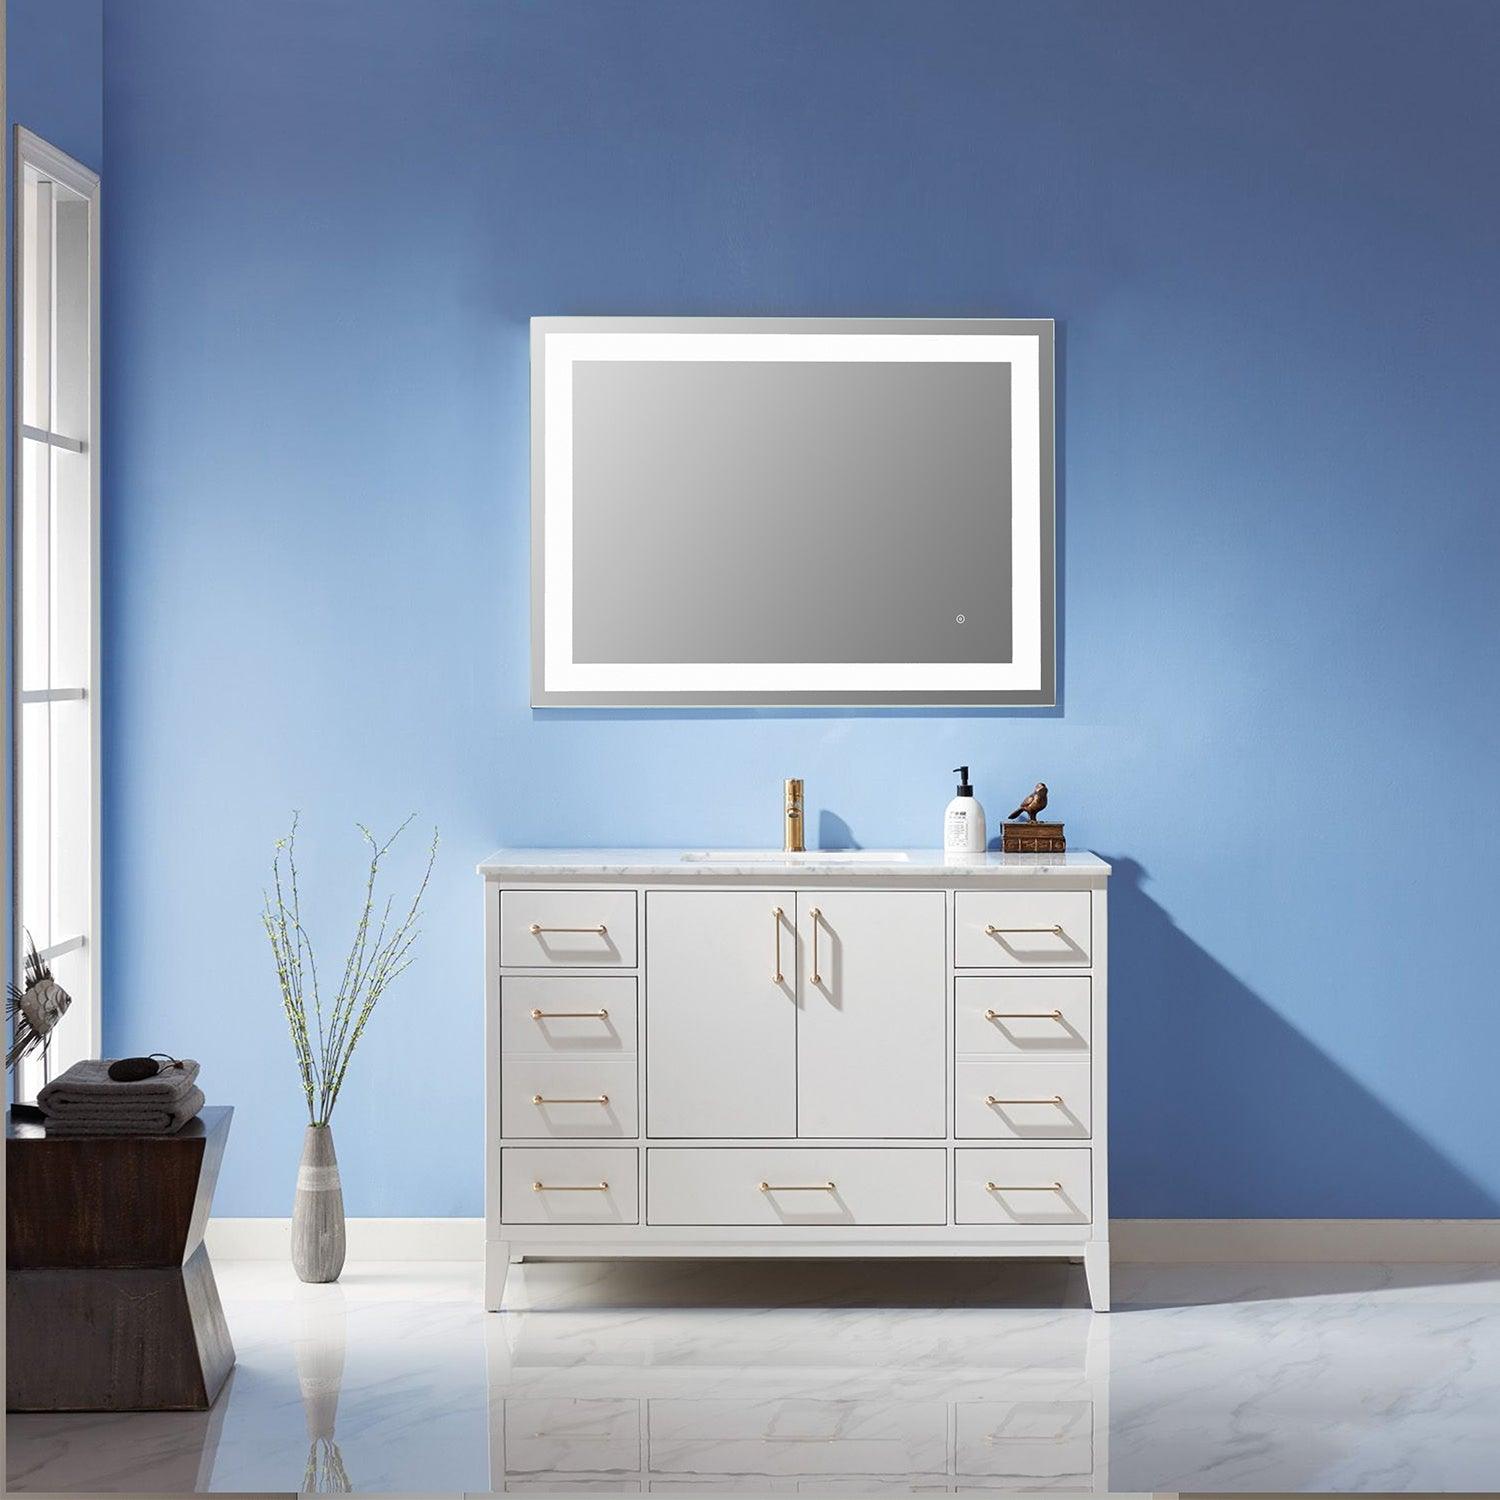 
  
  Altair Genova Rectangle Frameless Modern LED Bathroom Vanity Mirror
  
